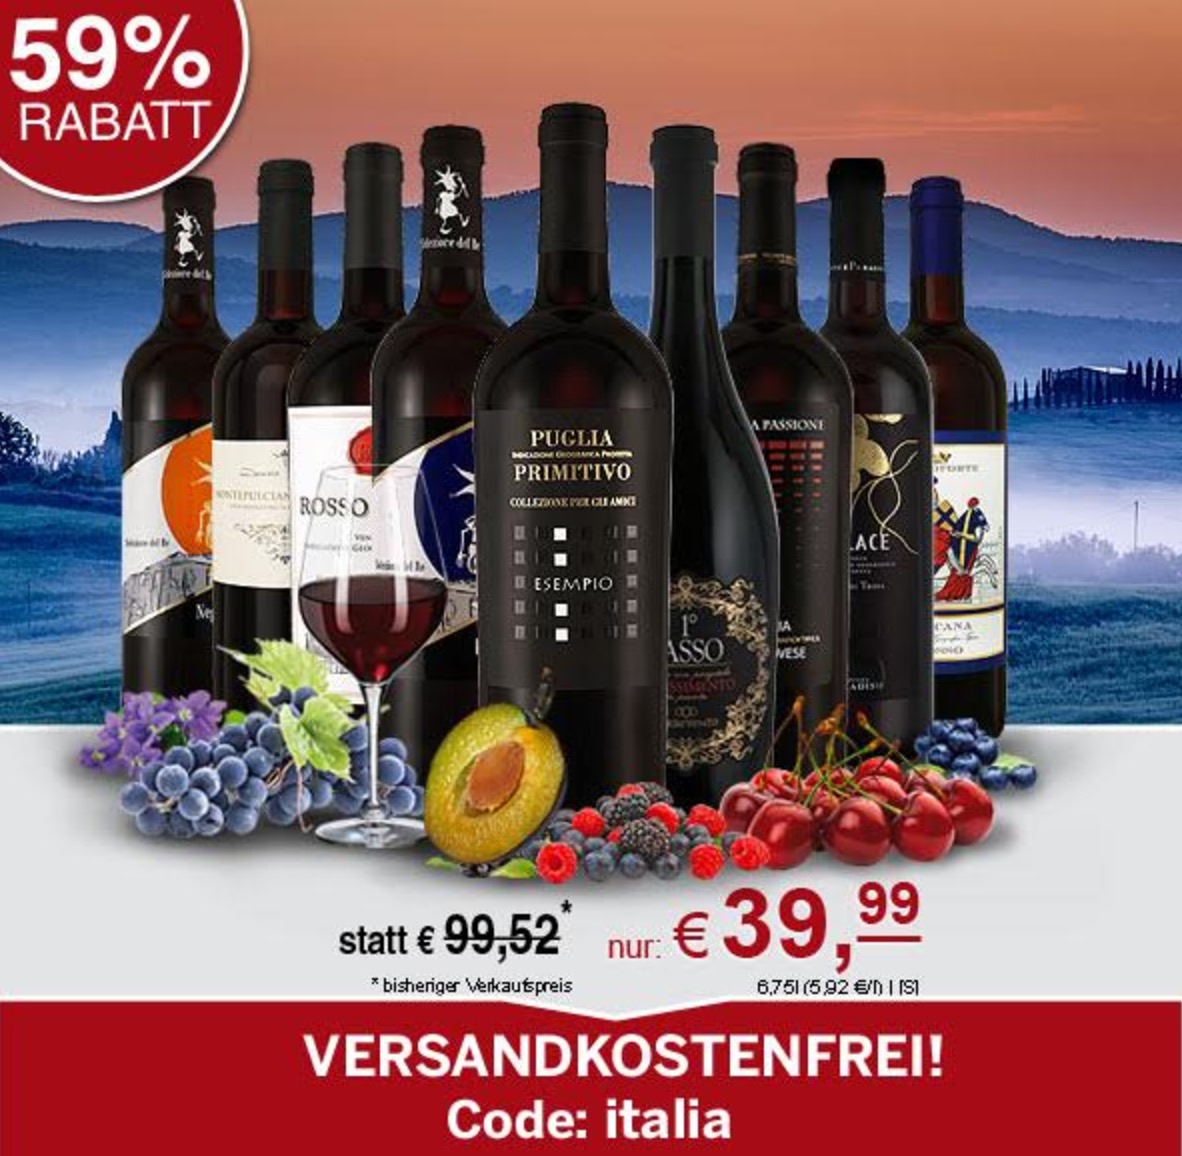 Italienische Probierwelt mit 9 Rotweinen für nur 39,99 Euro inkl. Versand